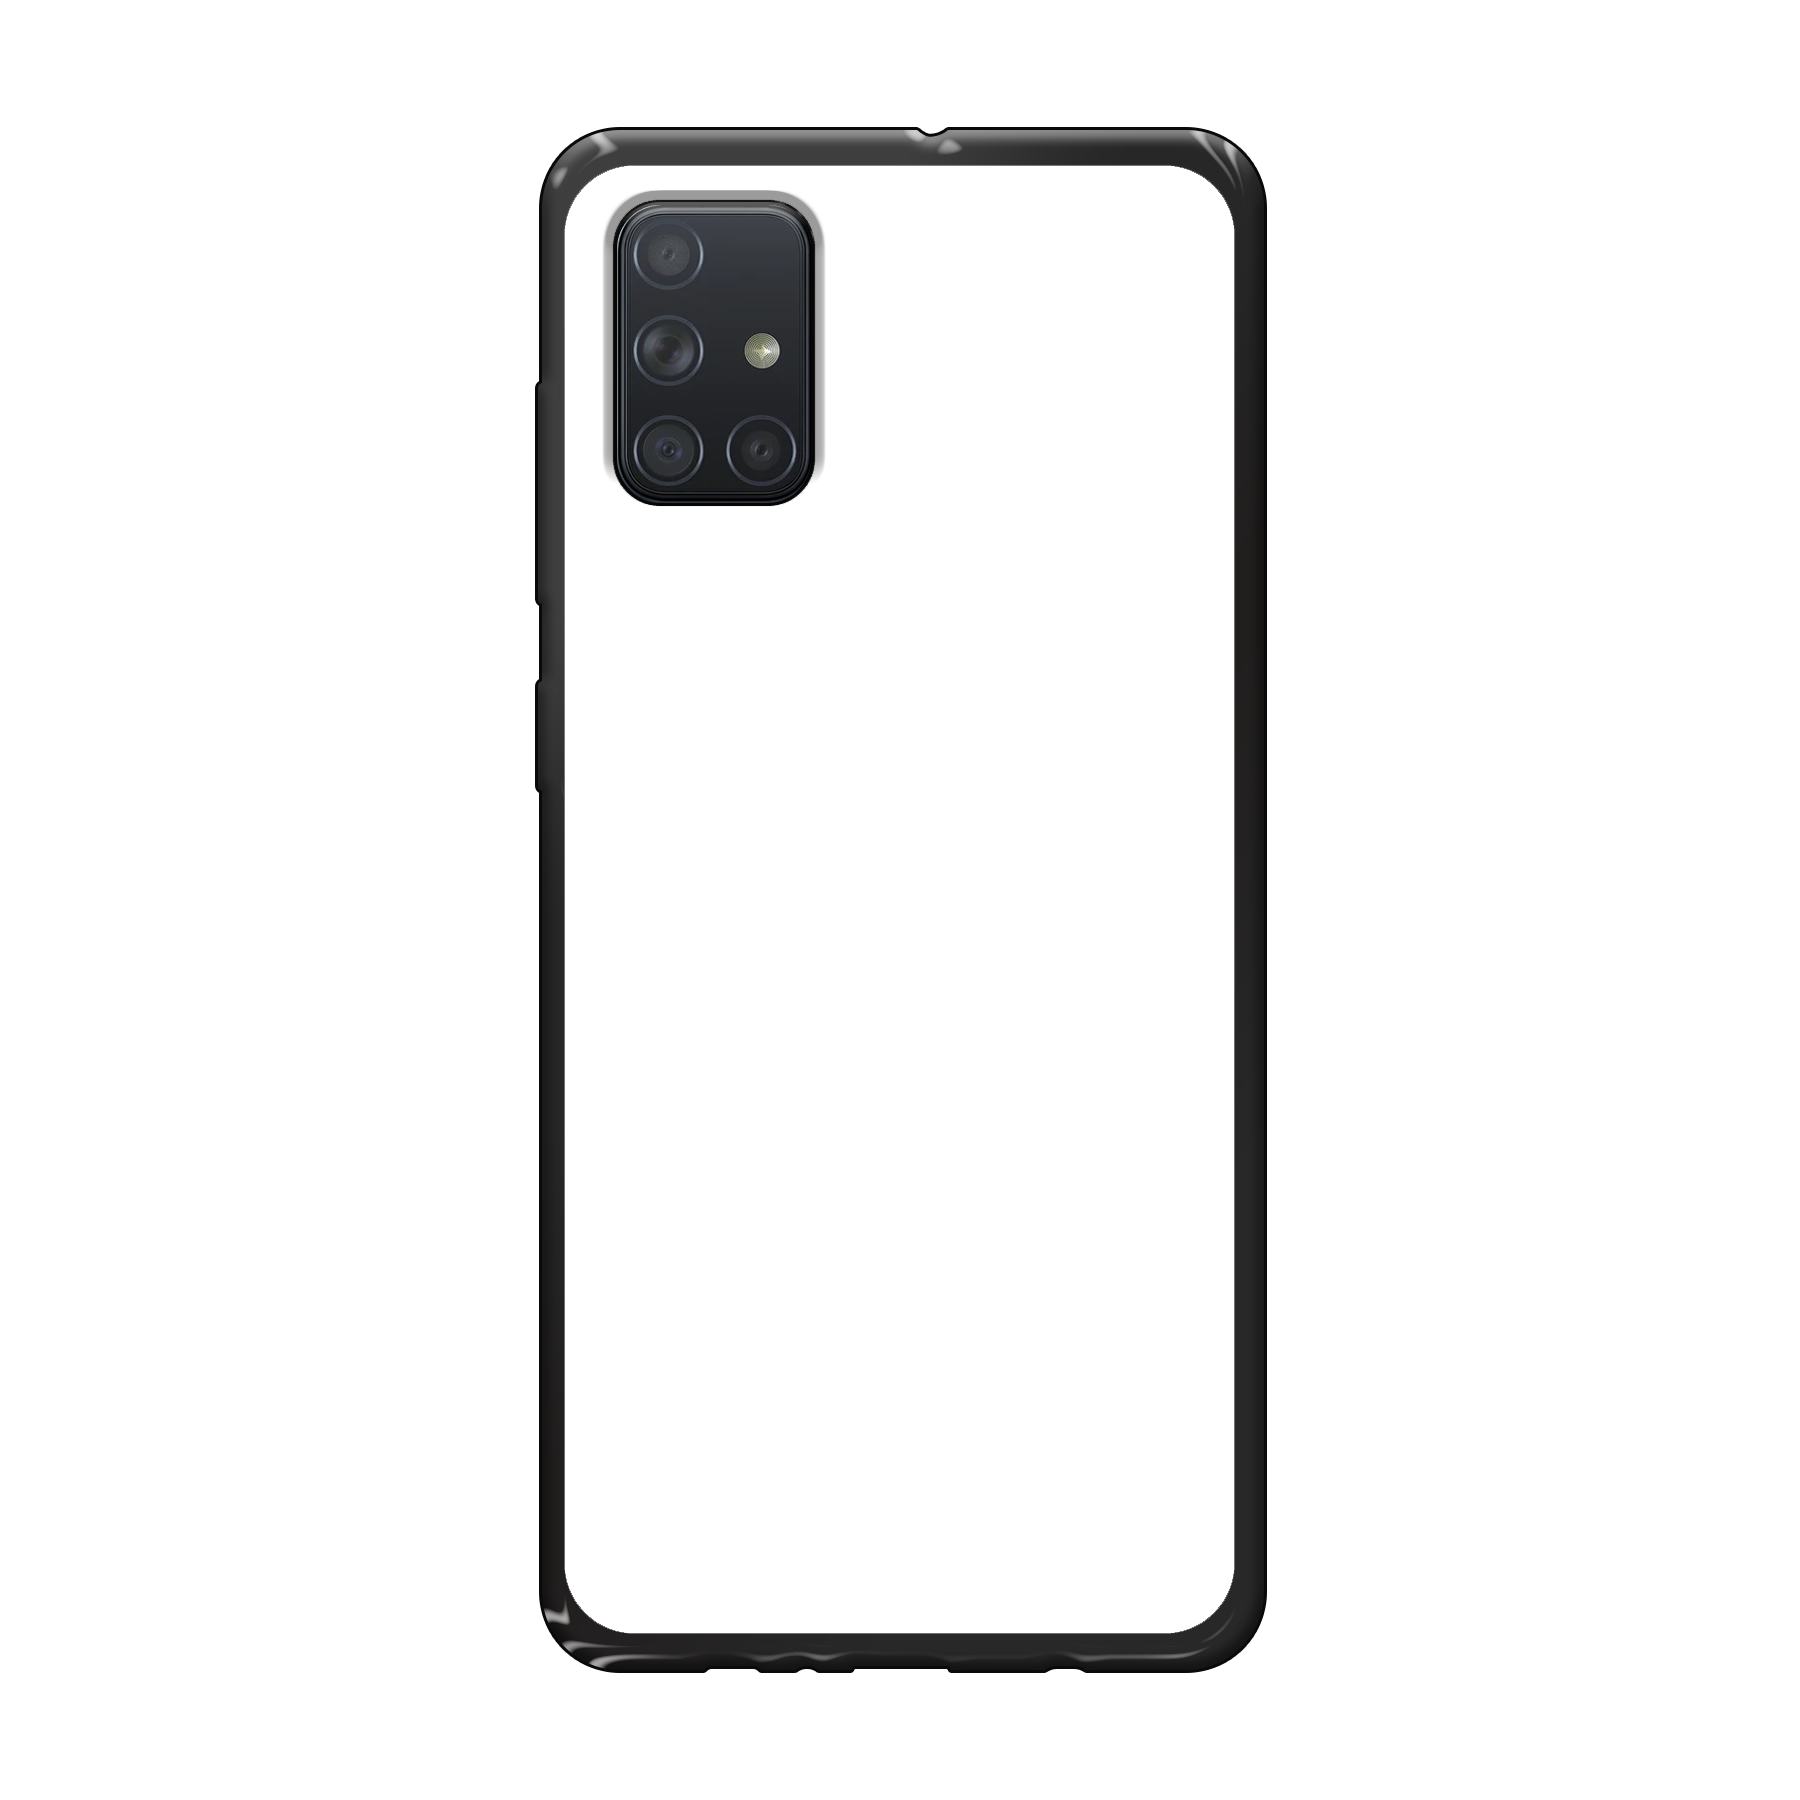 Samsung Galaxy A71 Soft case (back printed, black)